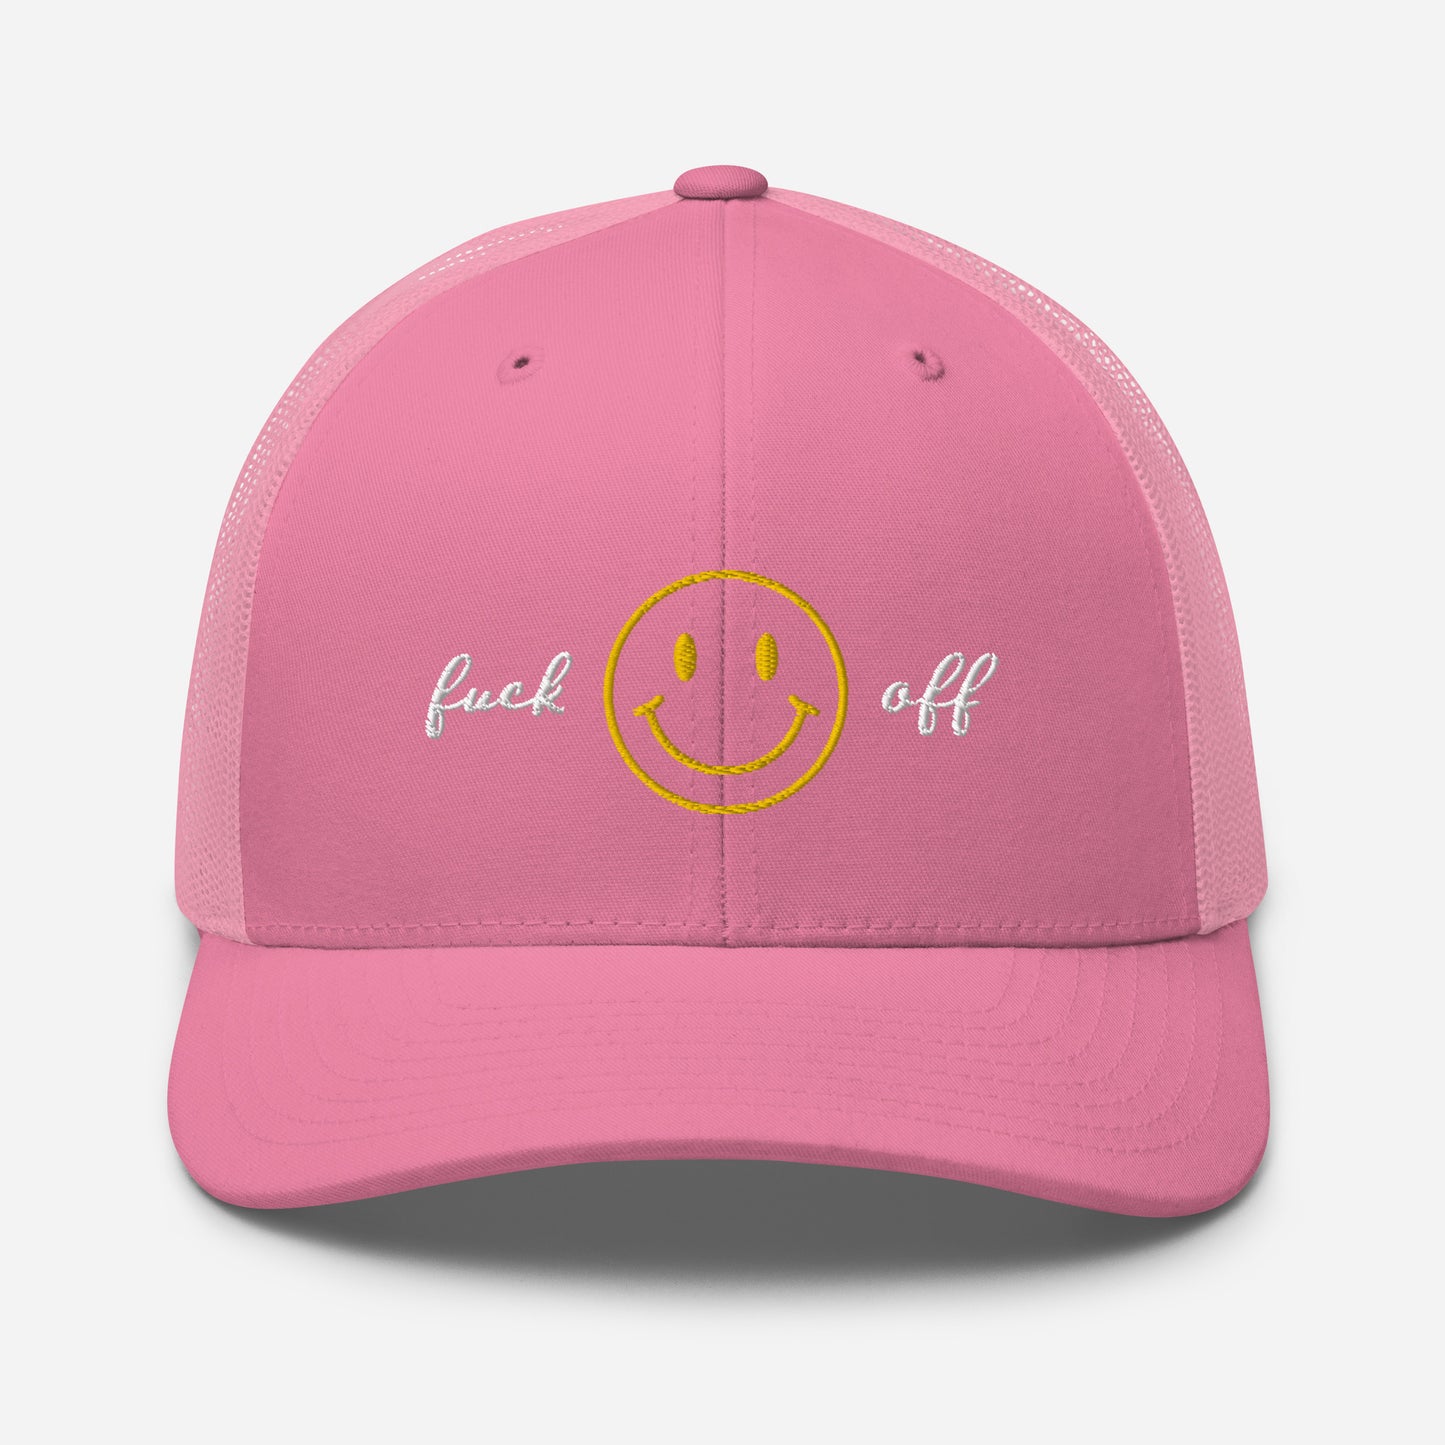 Fuck off | Retro Trucker Hat | Embroidered